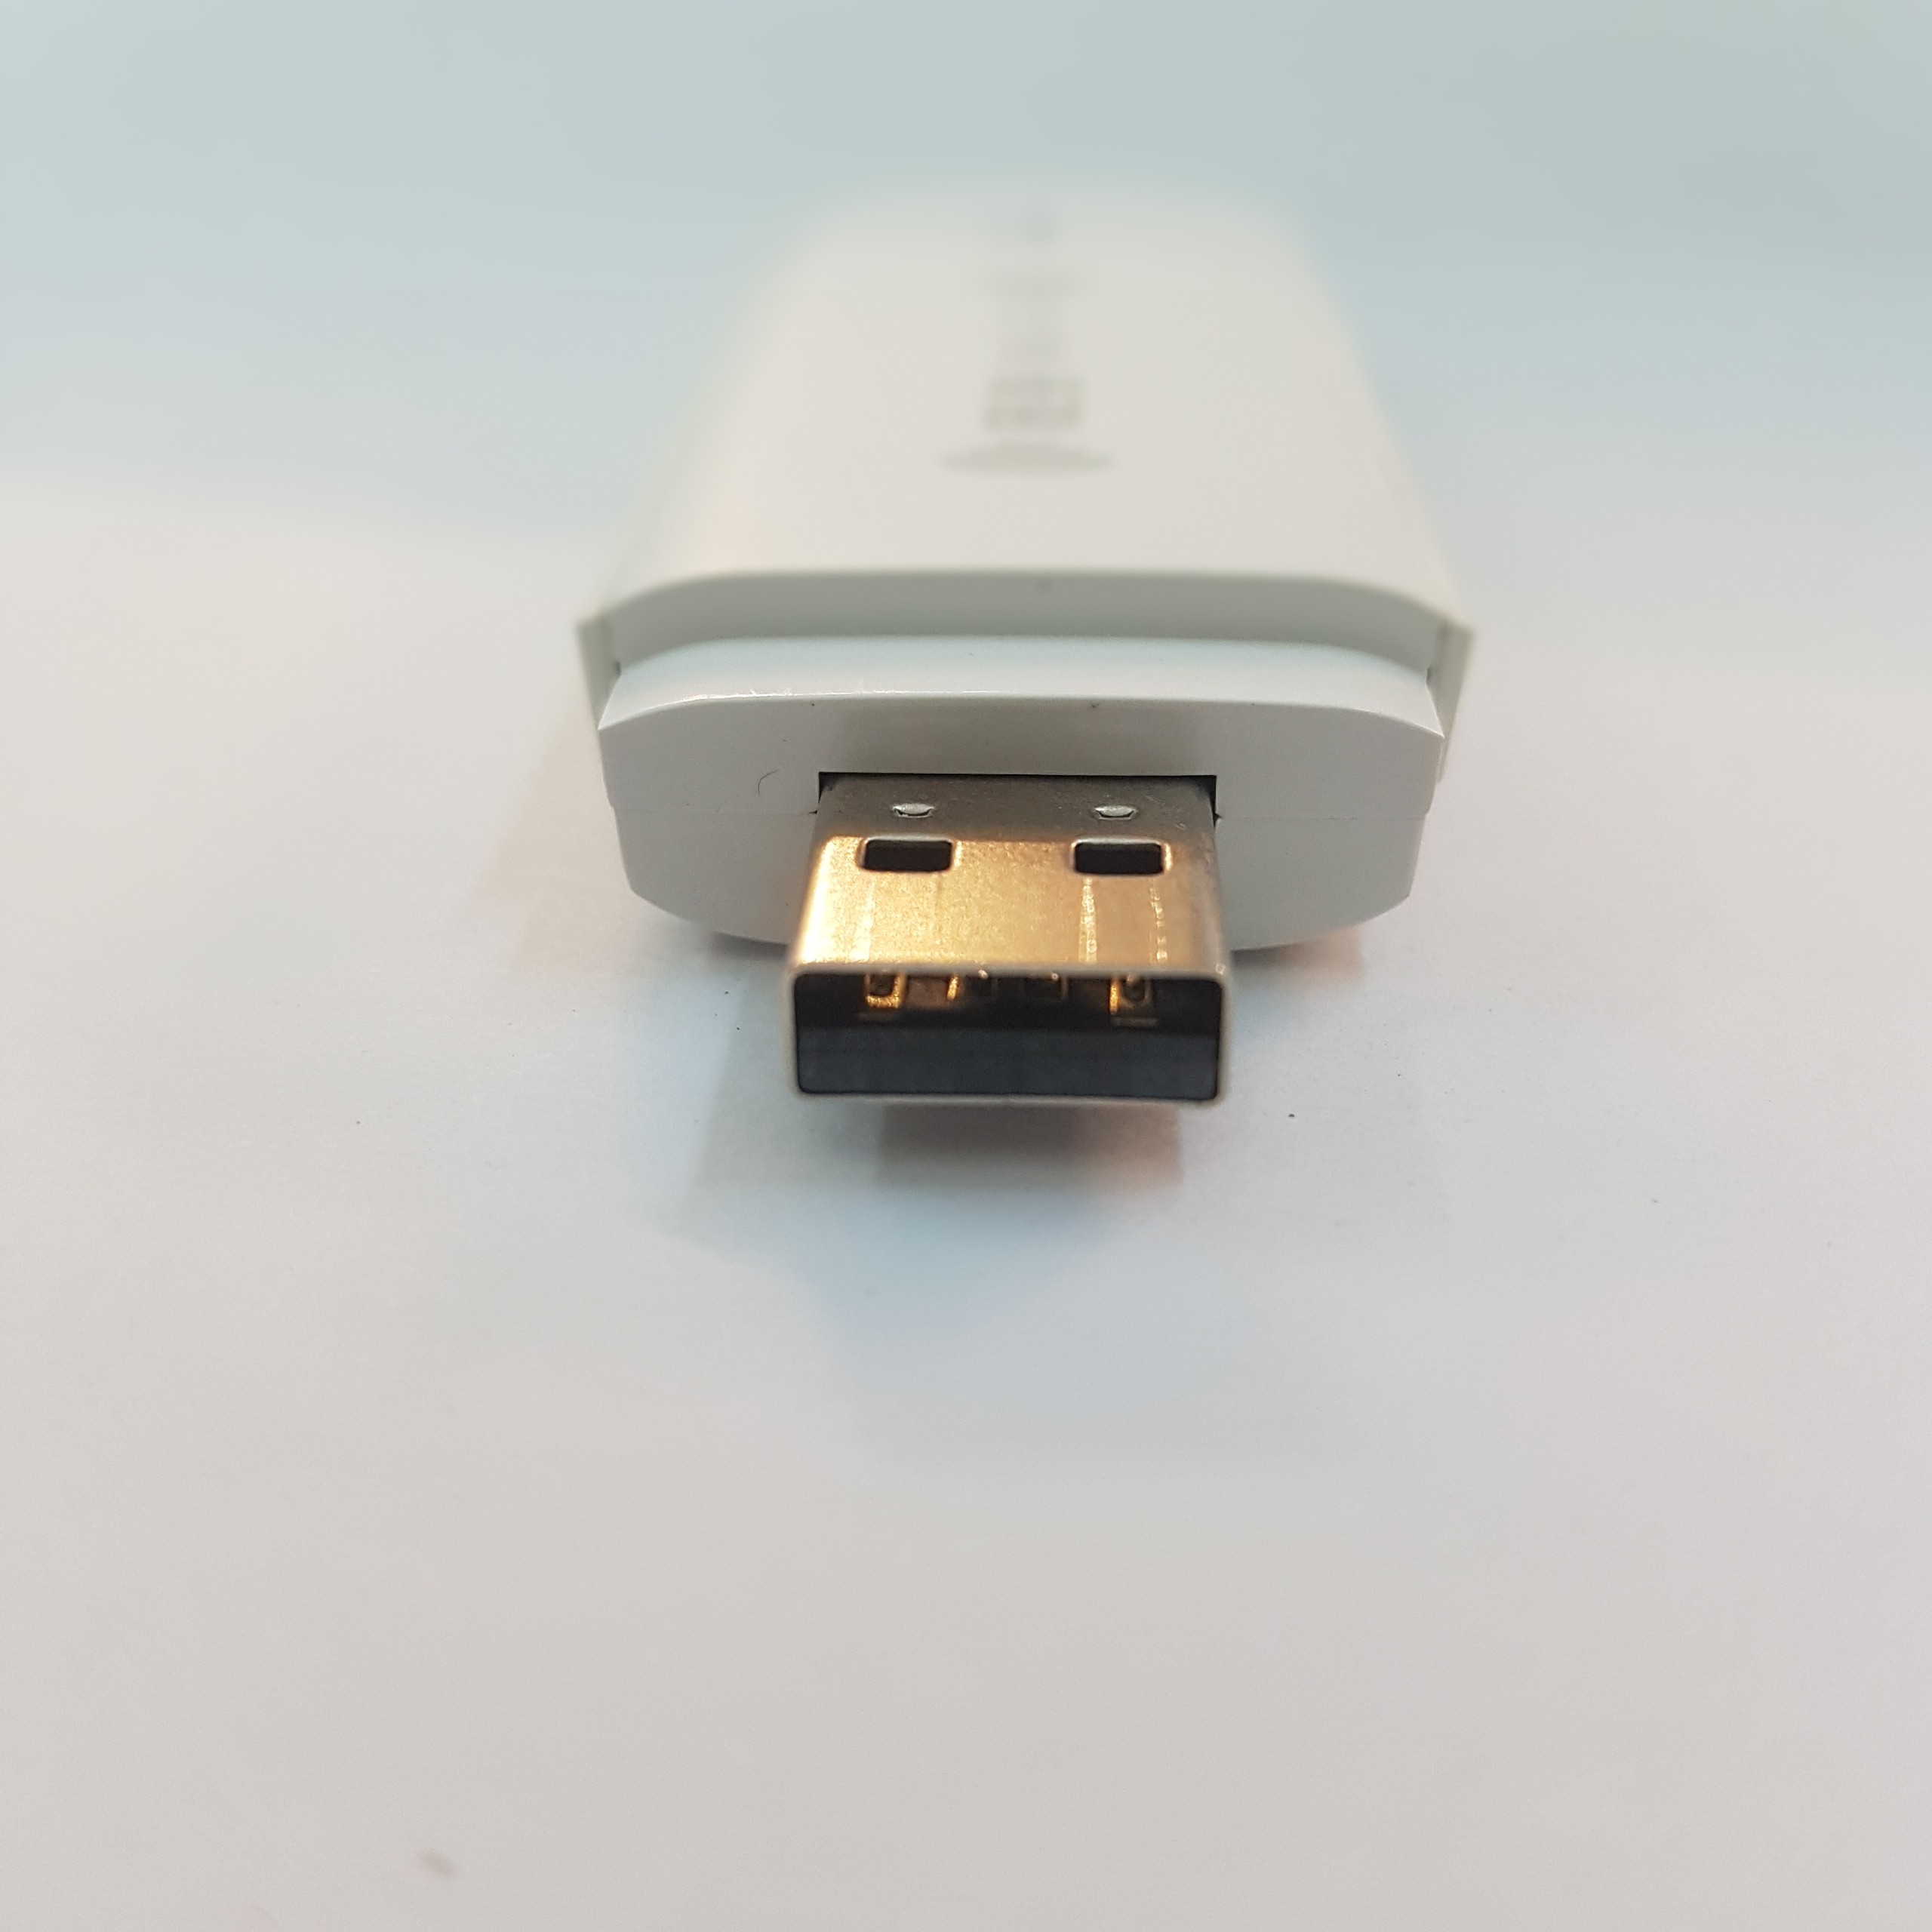 USB Phát Wifi 4G LTE MF782 150Mb – Kết Nối 10 WiFi + Dùng Cho Laptop, PC - Hàng Nhập Khẩu